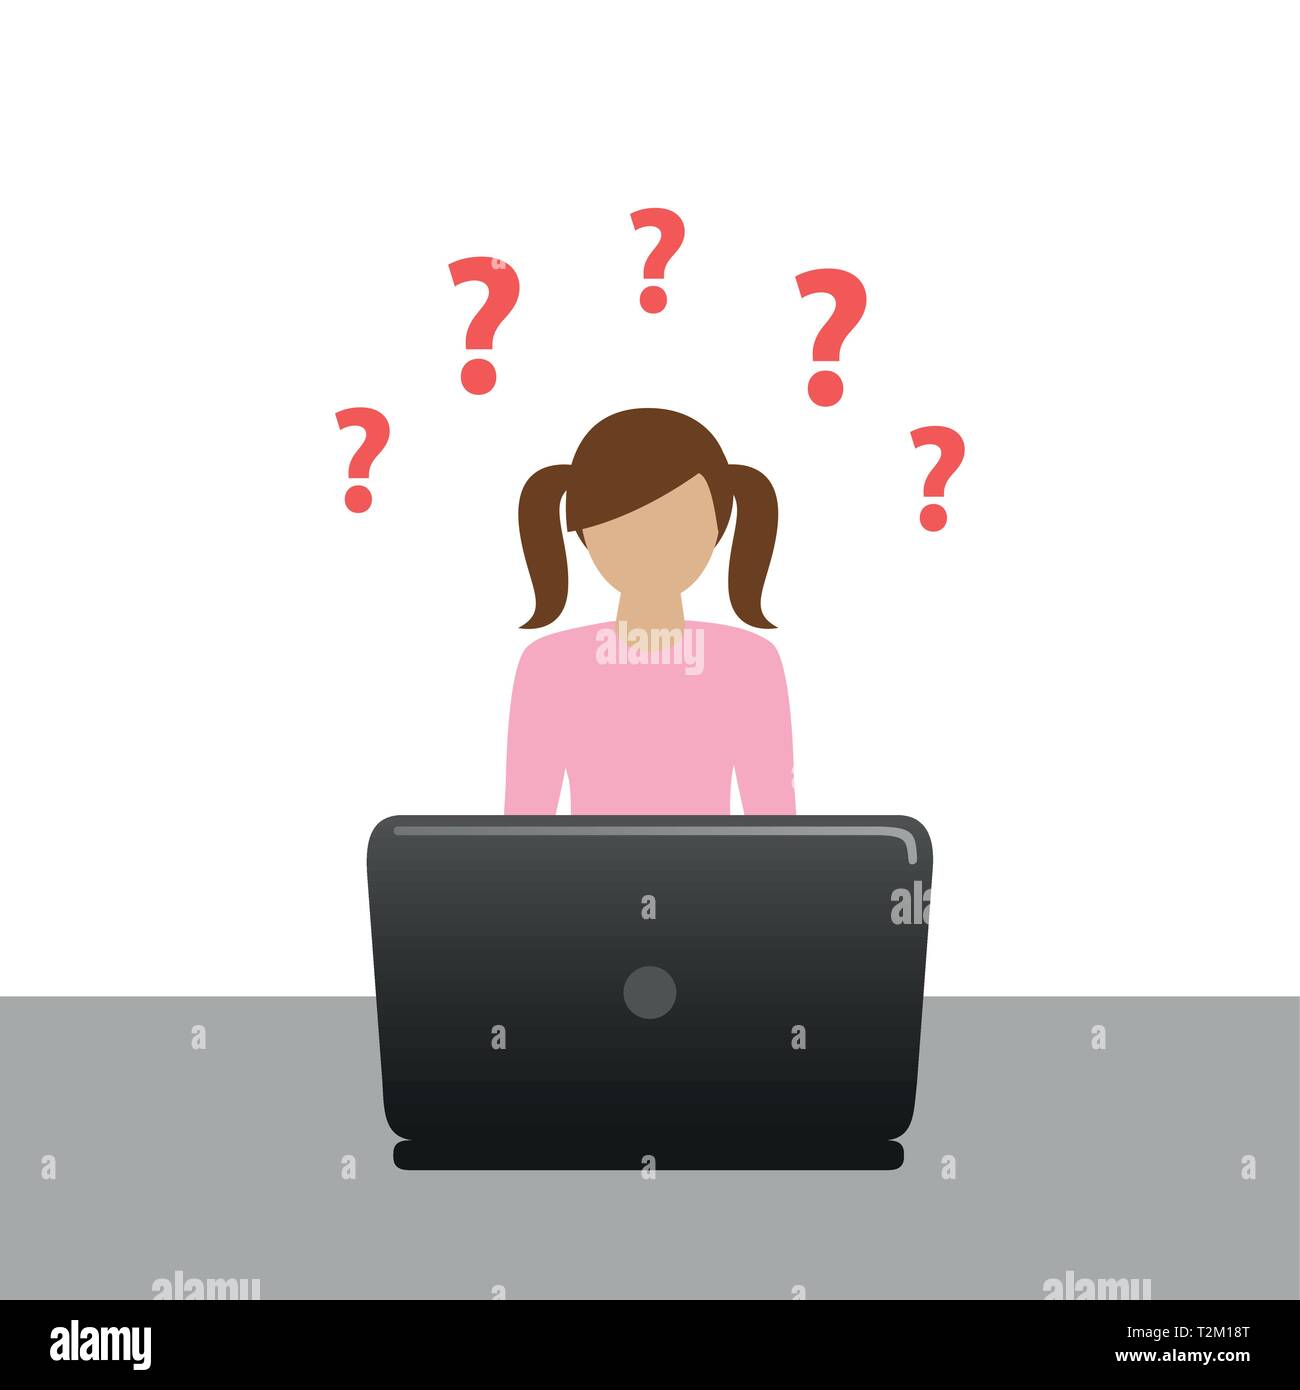 Kleines Mädchen auf dem Laptop hat viele Fragen Vektor-illustration EPS 10. Stock Vektor